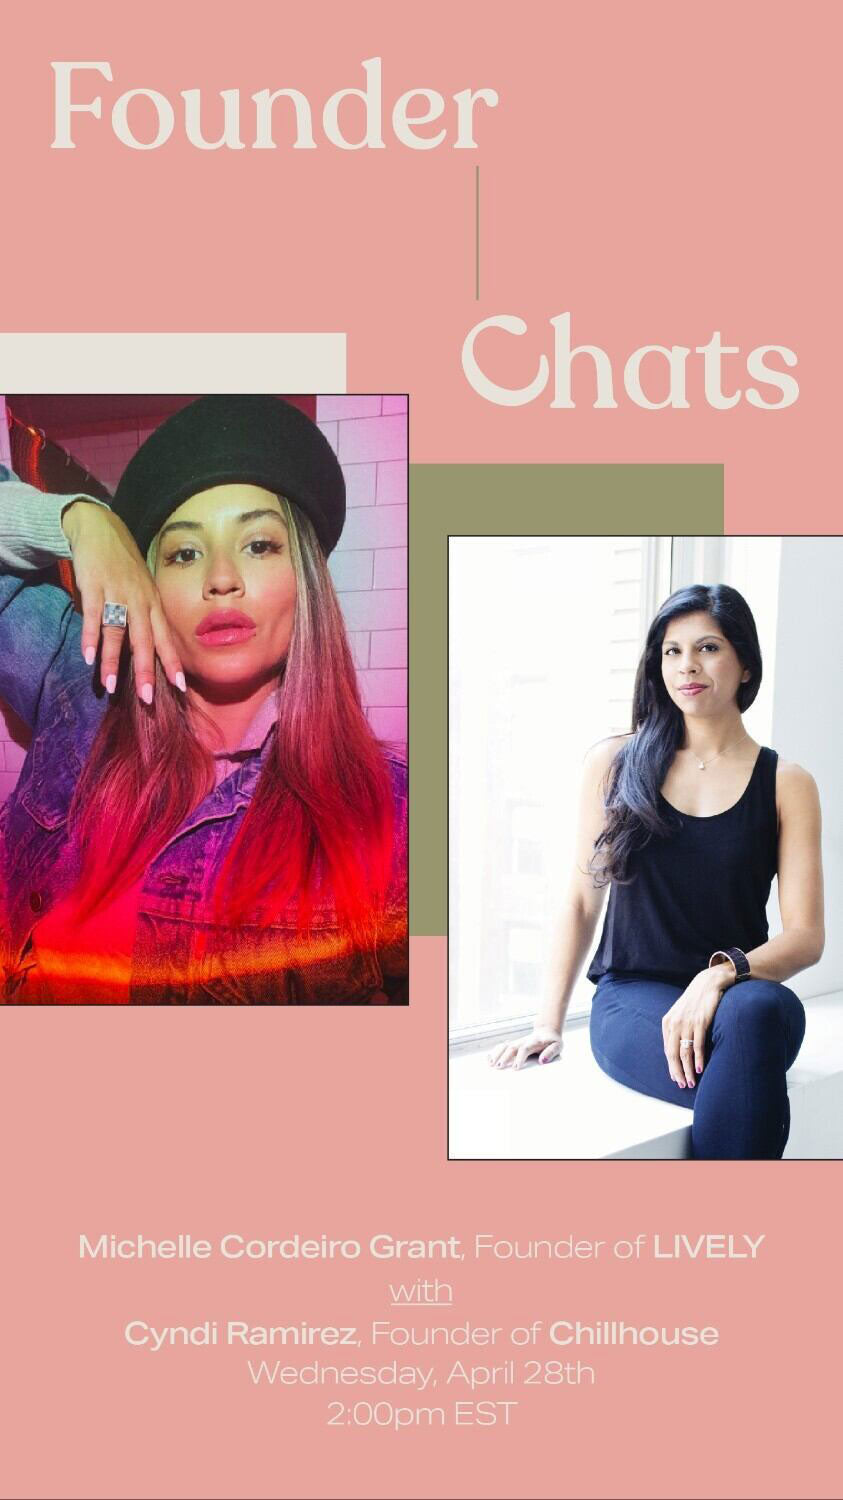 Founder Chats with Cyndi Ramirez